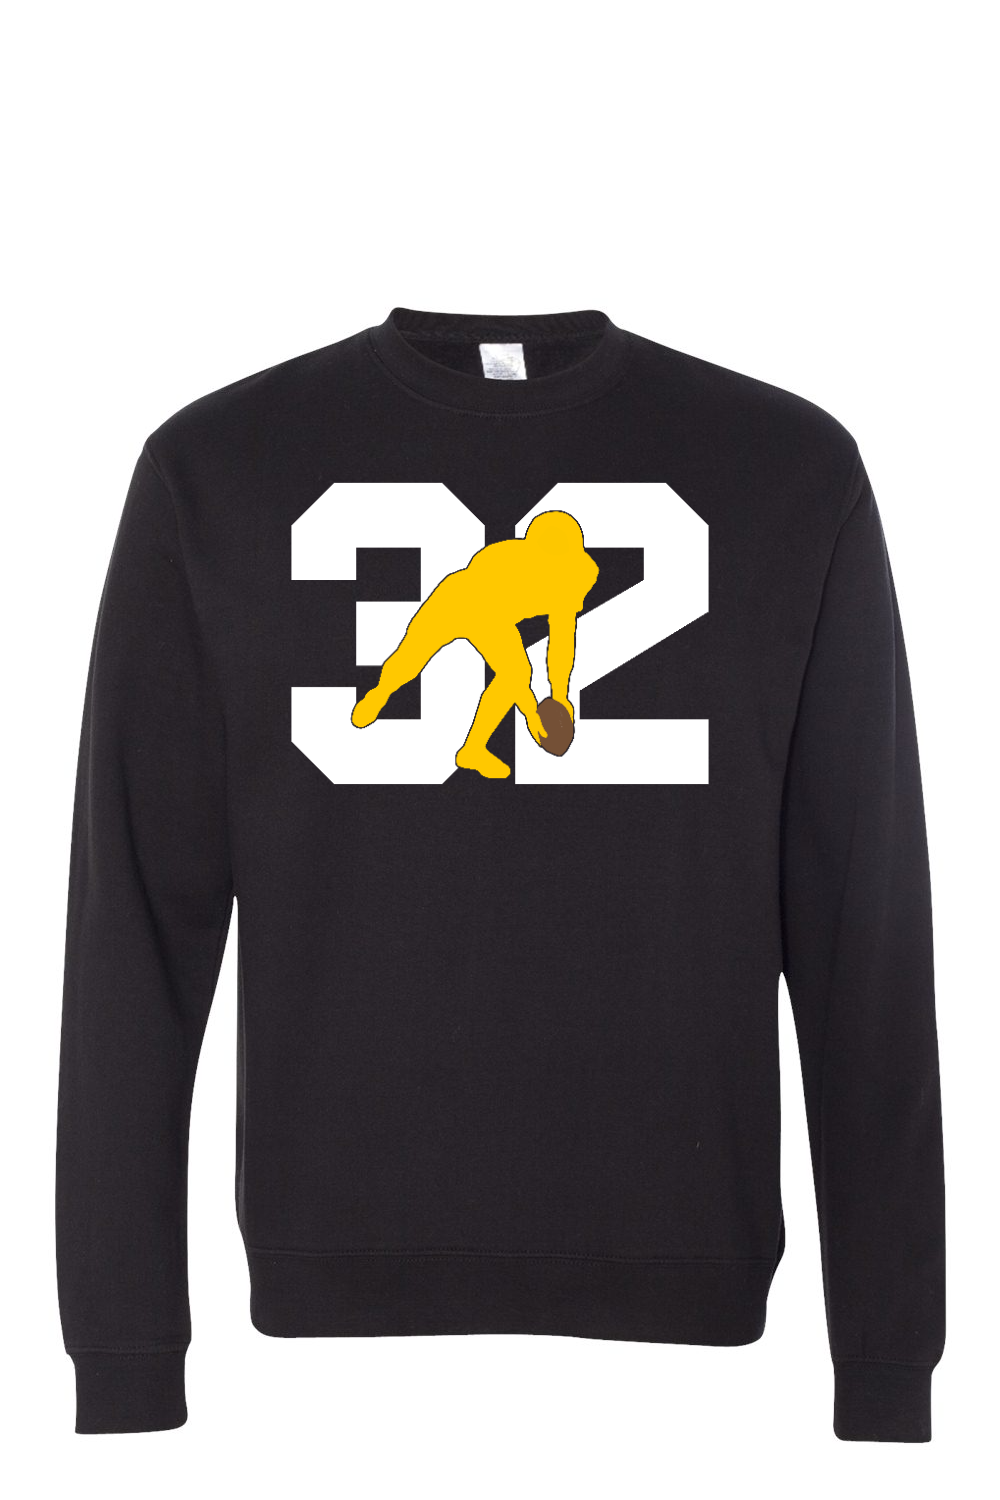 32 Forever - Premium Crewneck Sweatshirt